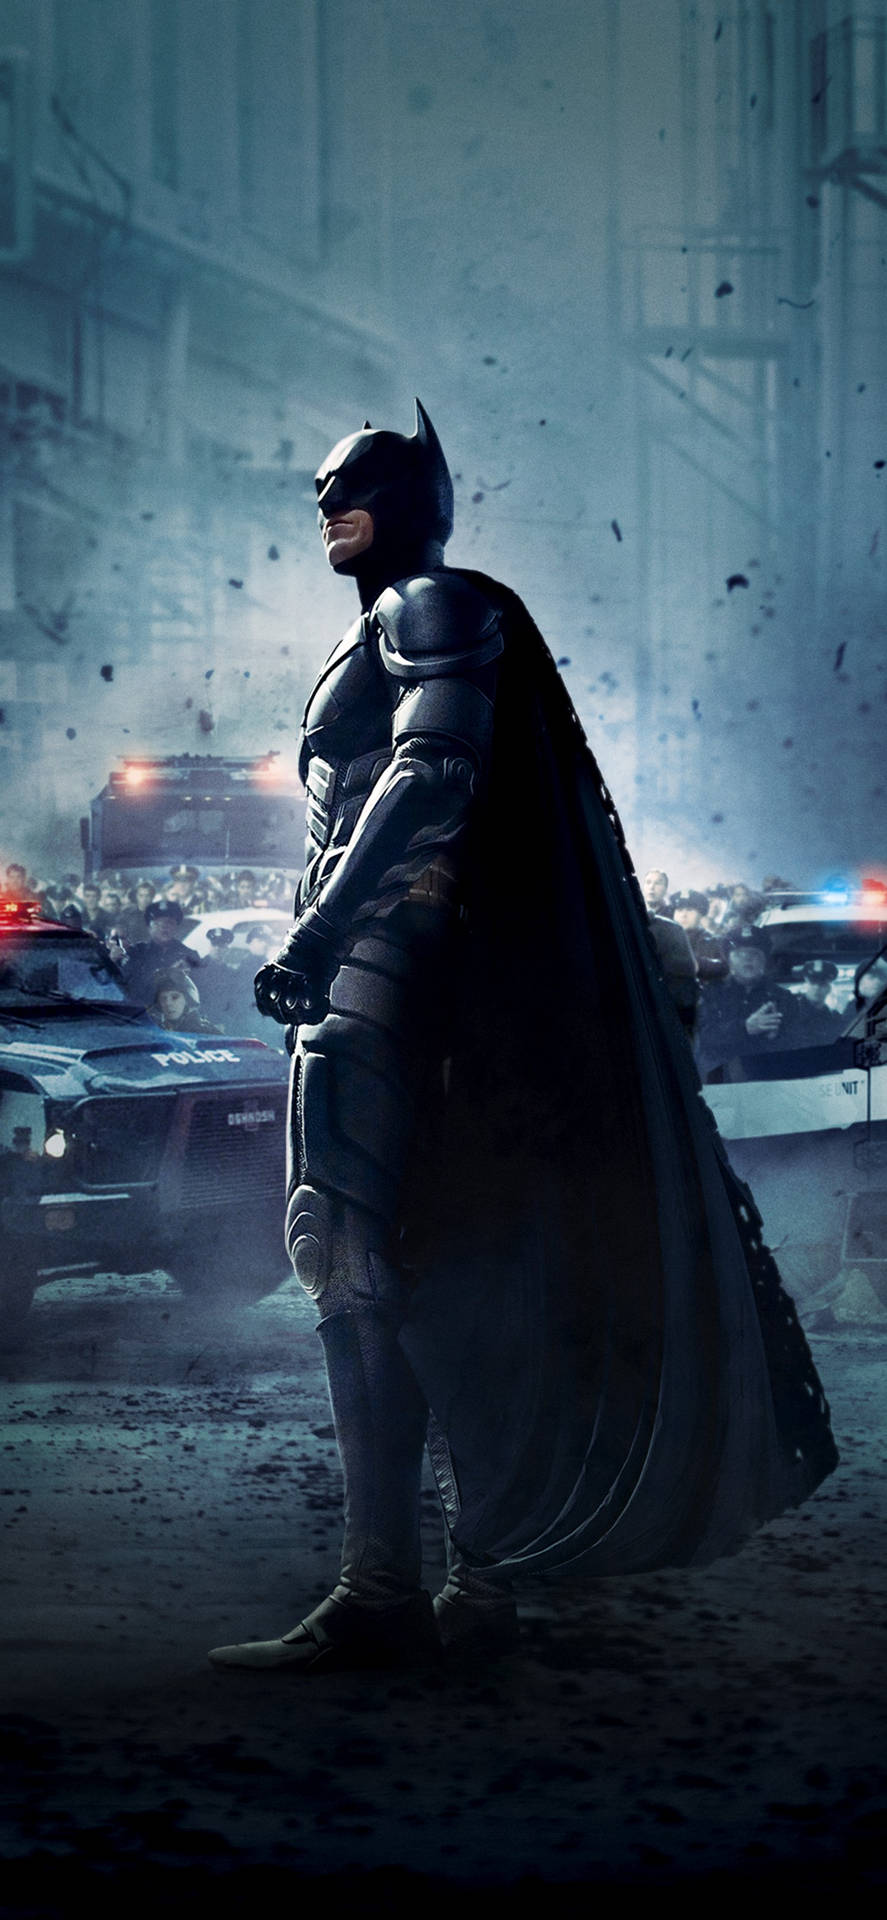 The Dark Knight Batman Portrait